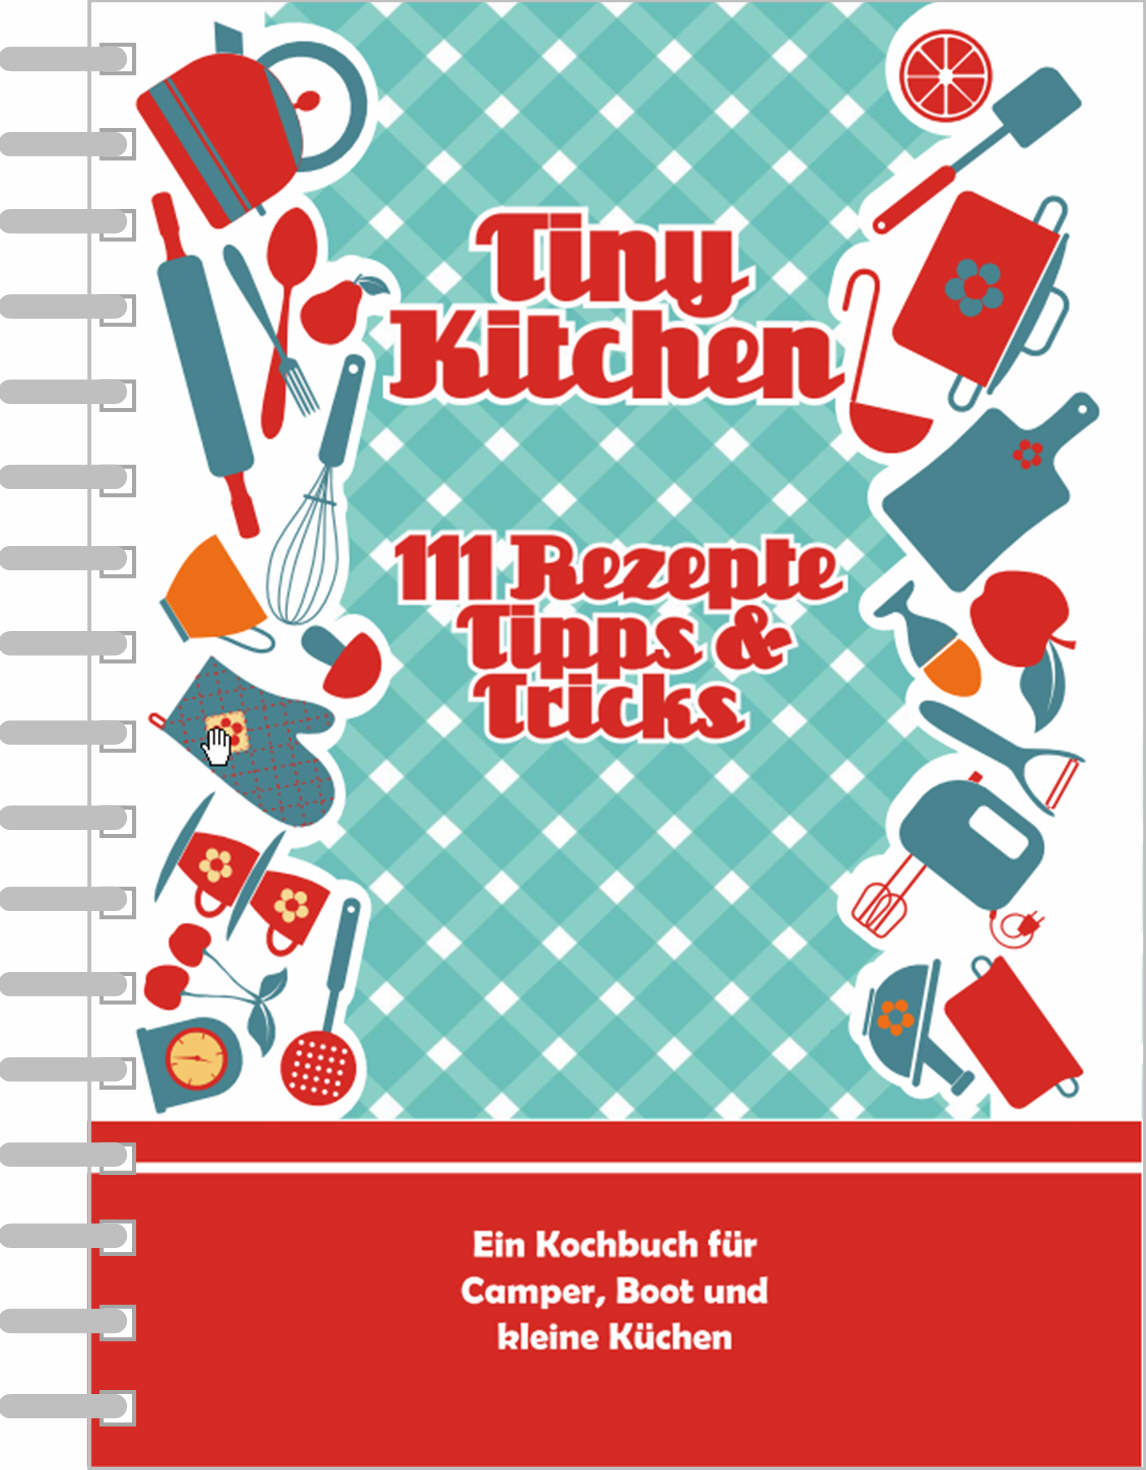 Kochbuch Tiny Kitchen - Verlag Lorem Ipsum